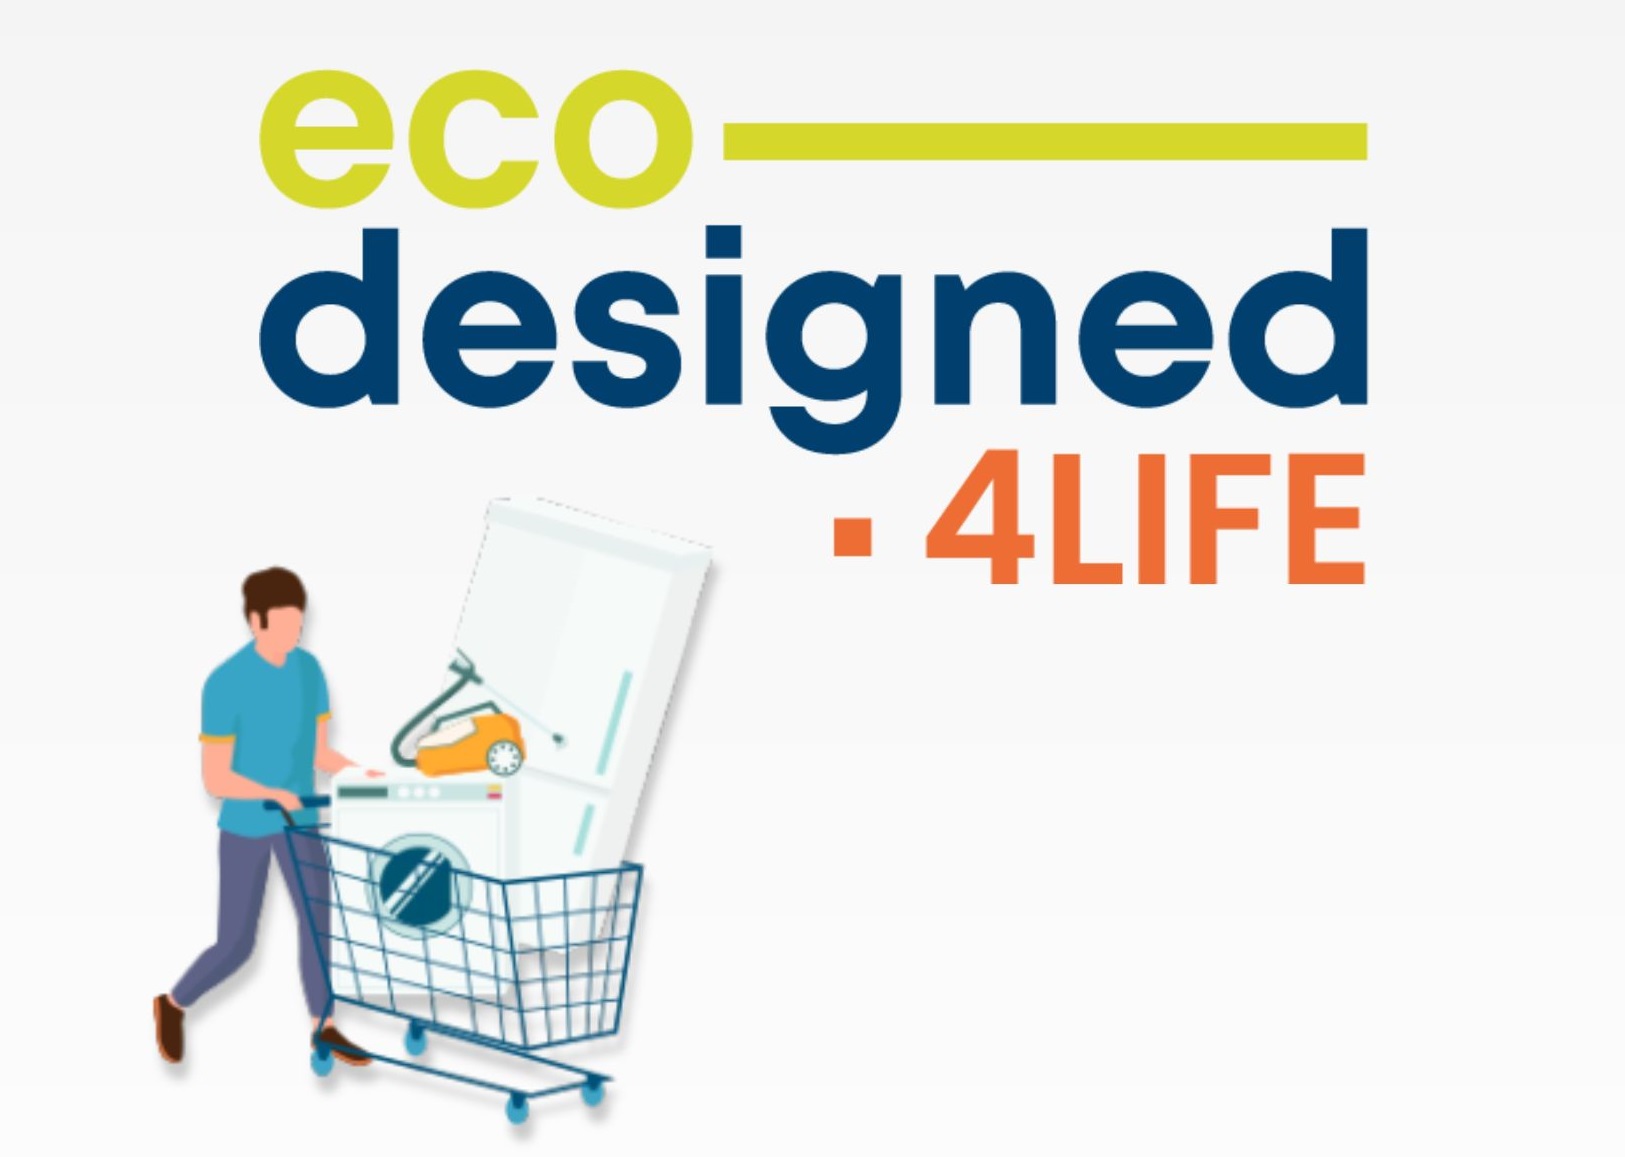 ecodesigned4life logo